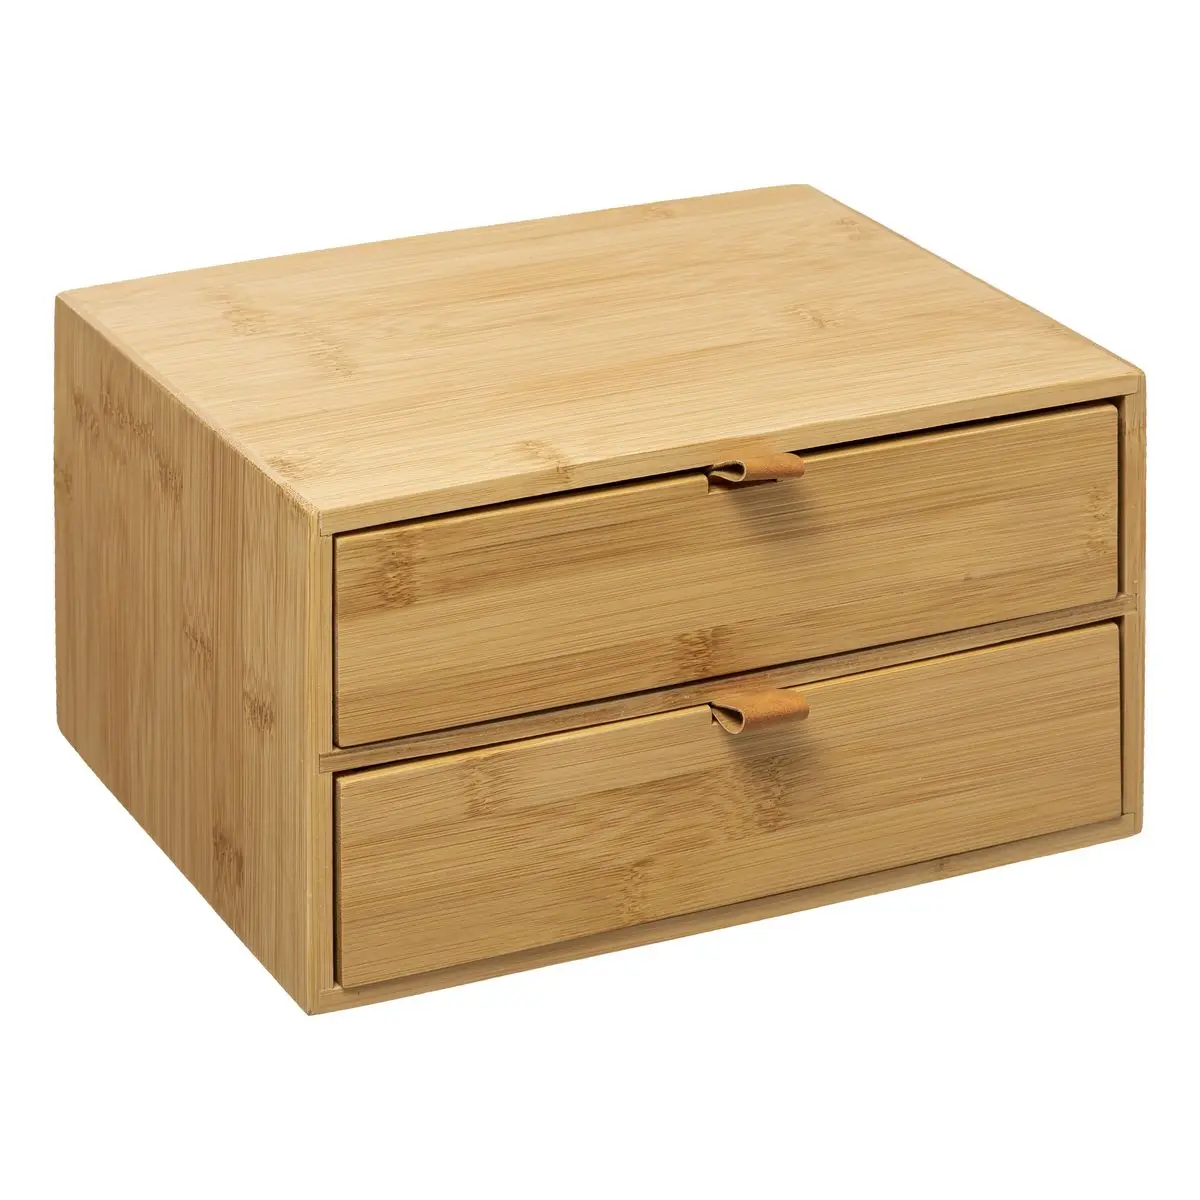 Schreibtisch B眉ro Organizer 2 Schubladen | Aufbewahrungsboxen